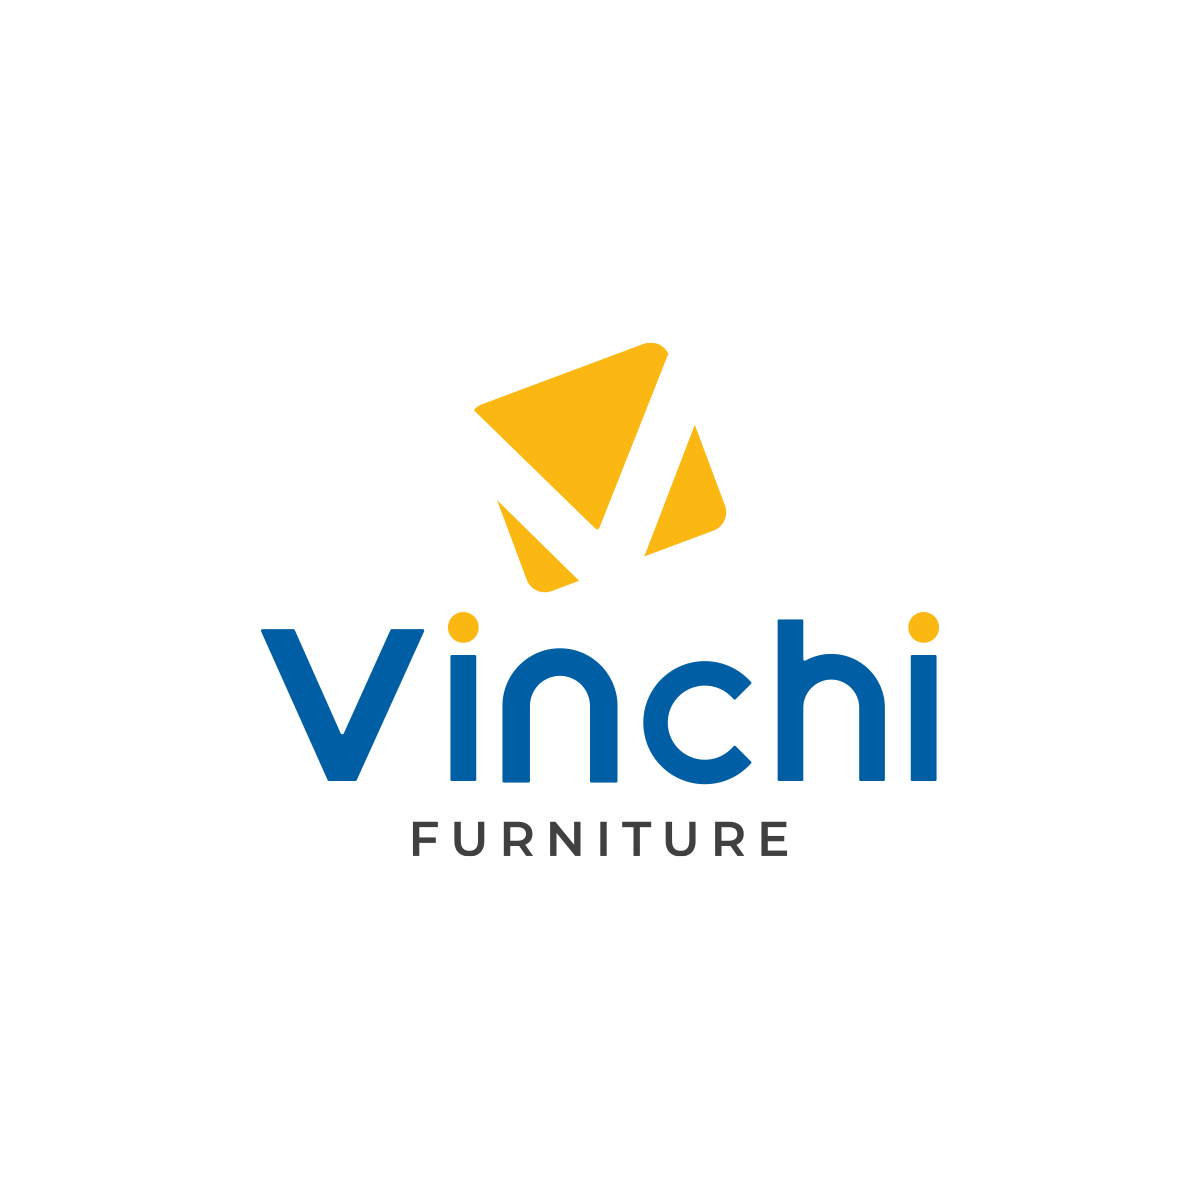 Vinchi furniture